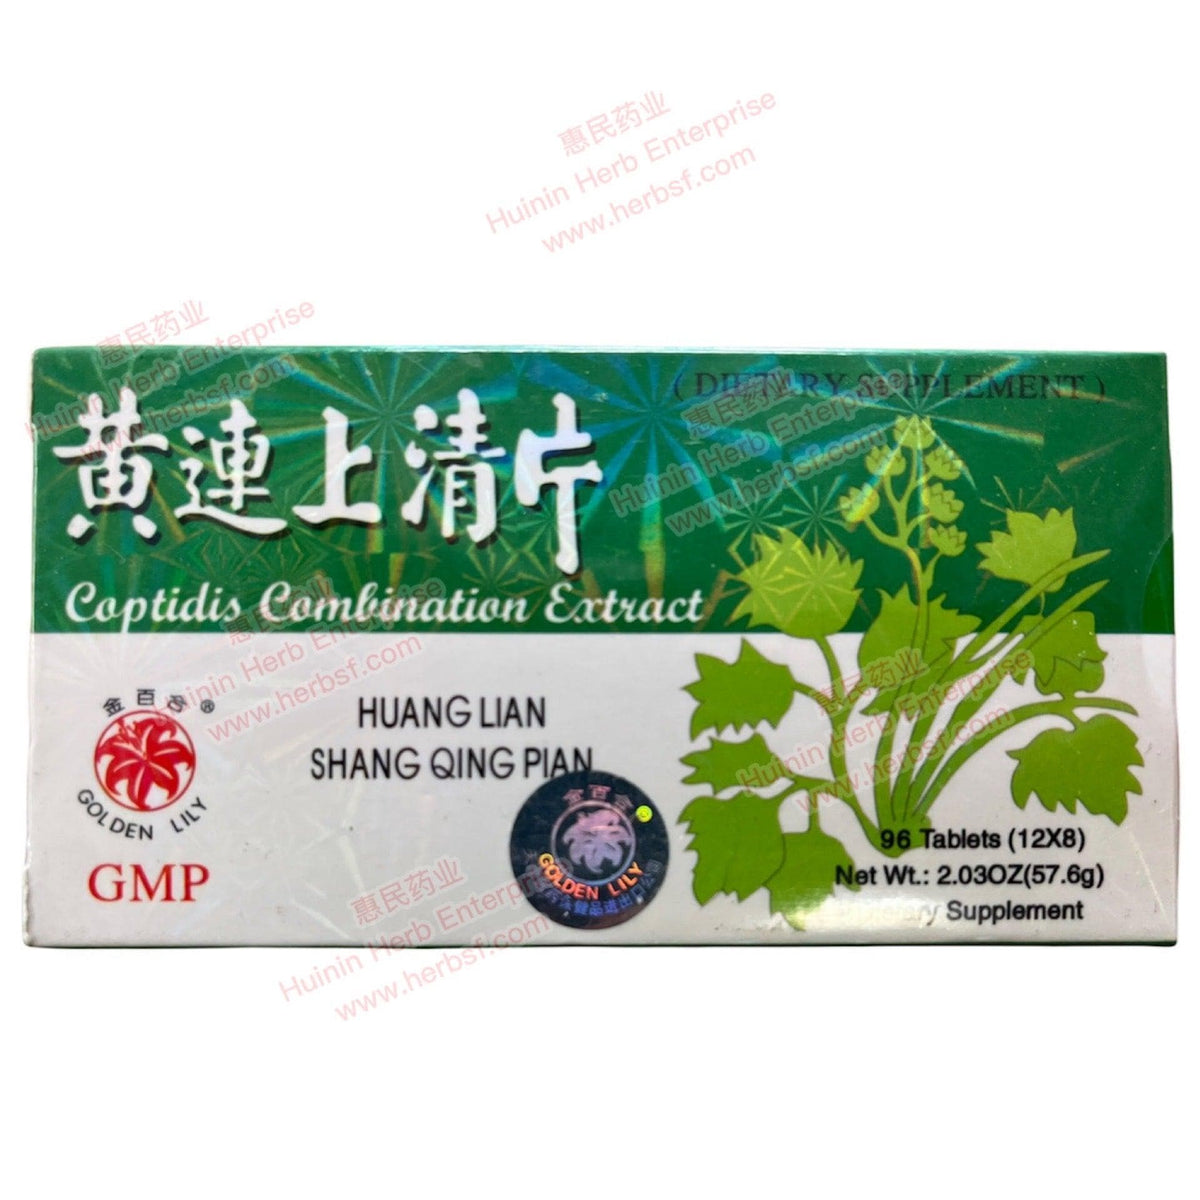 Huang Lian Shang Qing Pian - Huimin Herb Online, LLC